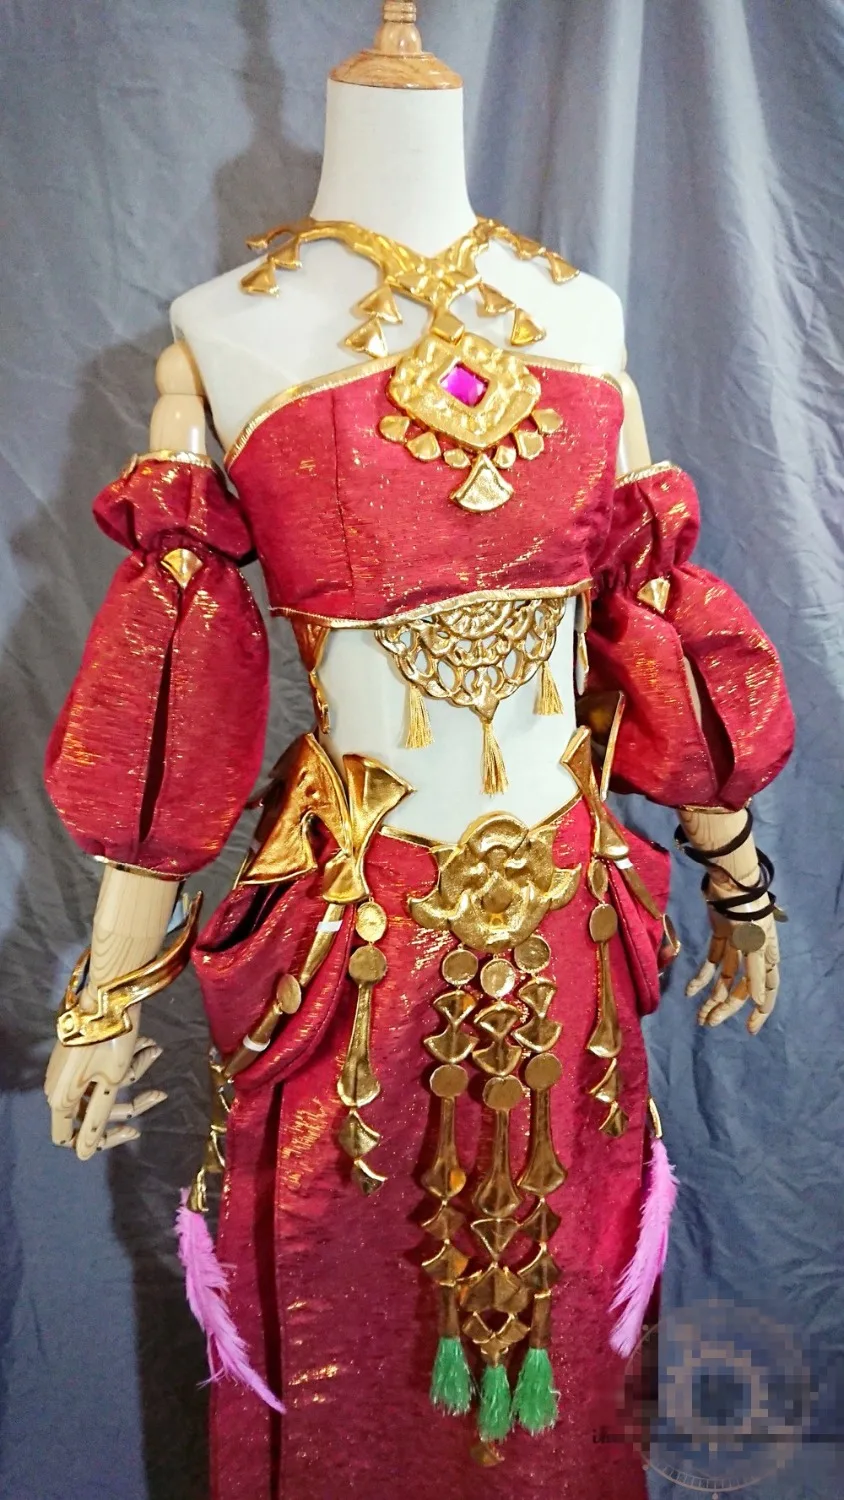 FF14 Костюм Final Fantasy XIV Savi танцор косплей костюм сексуальный новогодний Рождественский костюм на заказ/размер платья женские